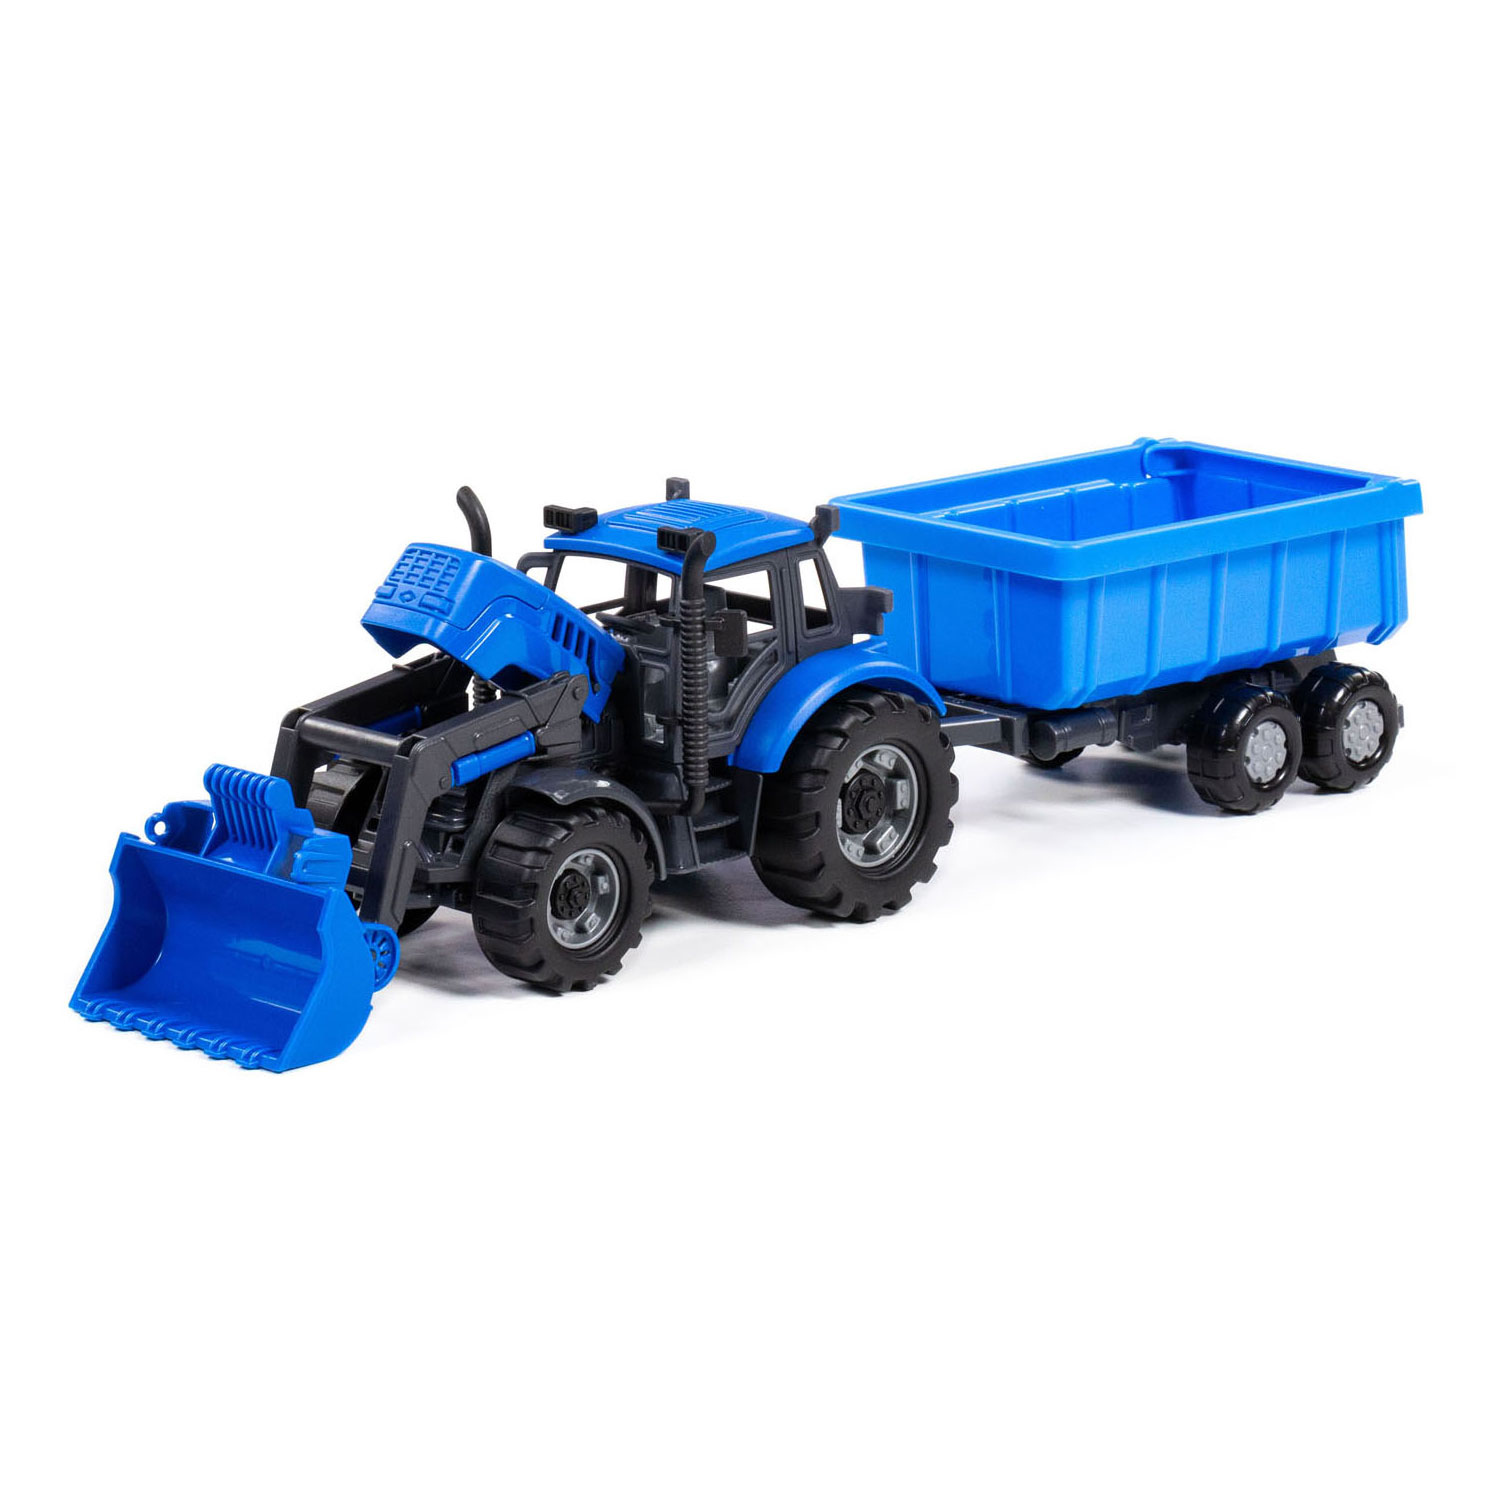 Cavallino Traktor mit Lader und Anhänger, Muldenkipper, blau, Maßstab 1:32